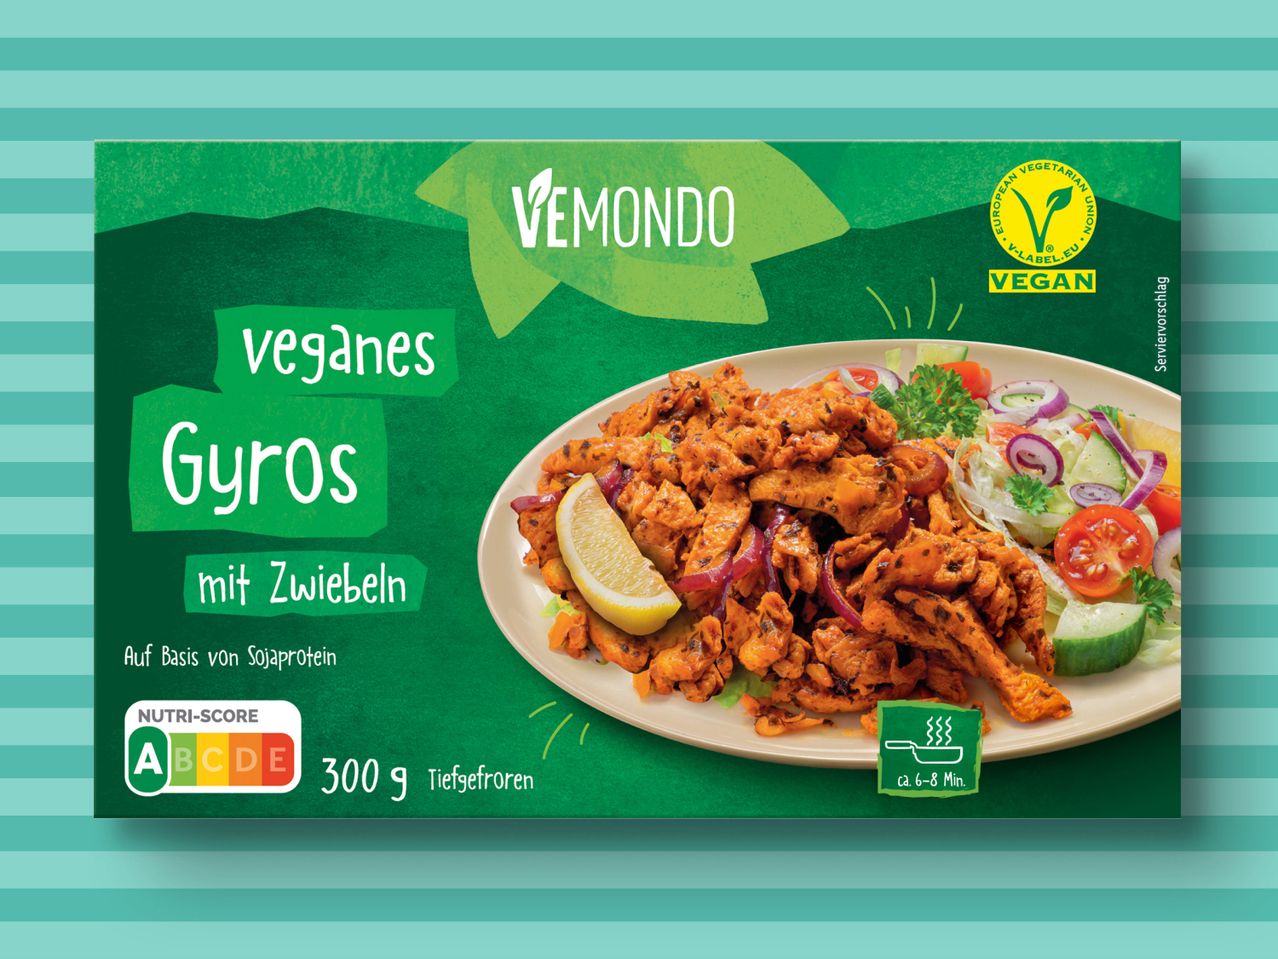 Veganes Vemondo Gyros